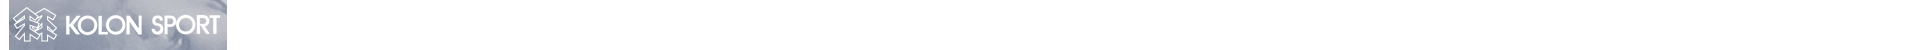 코오롱스포츠 로고